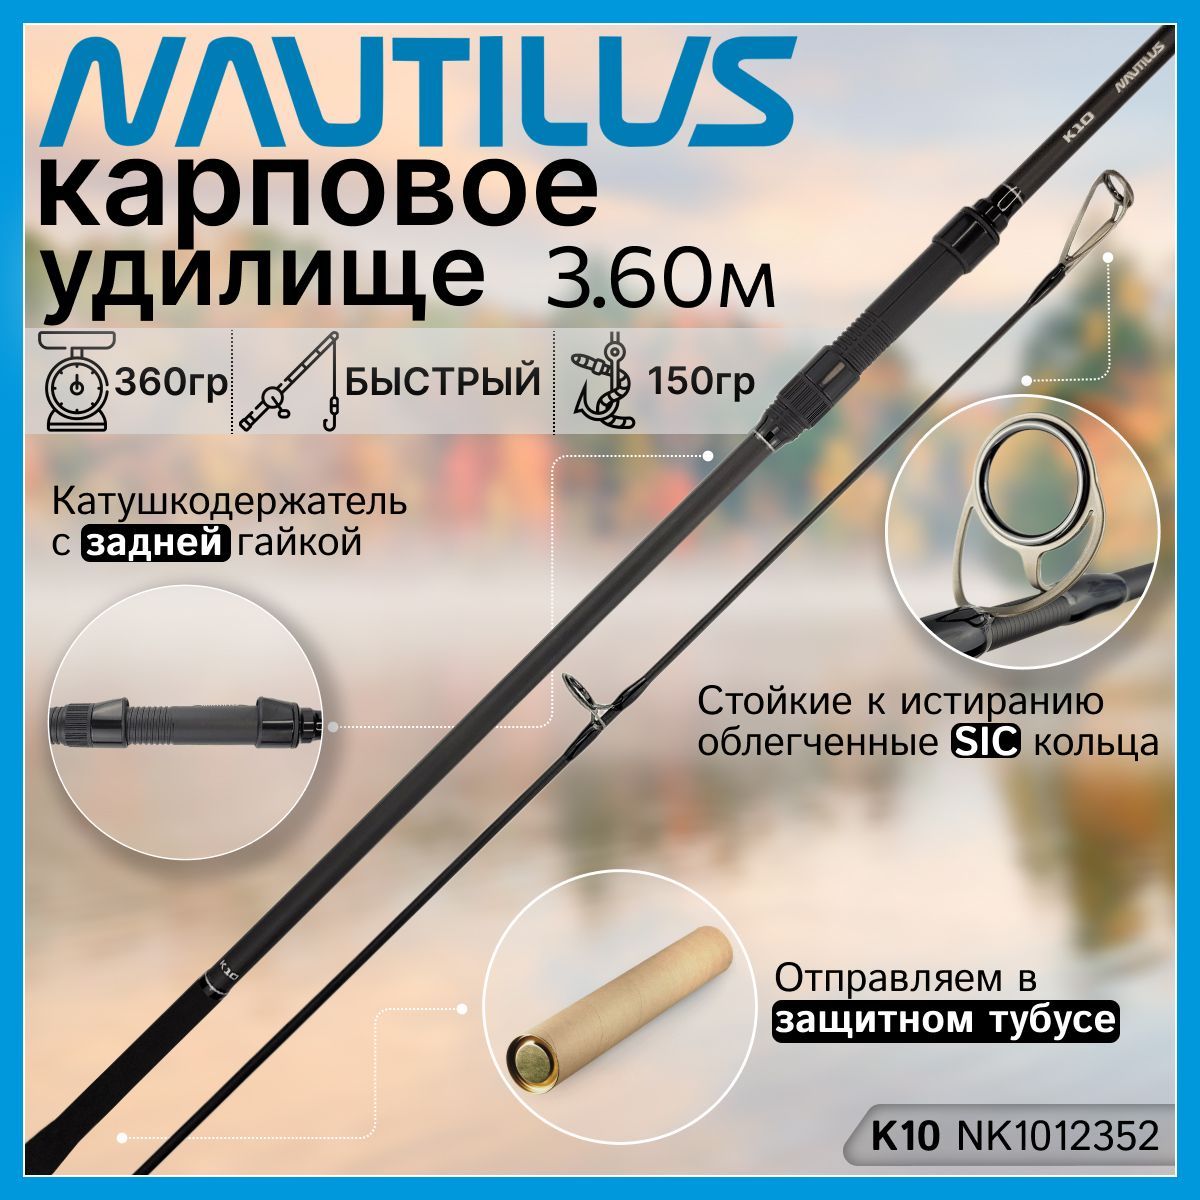 Спиннинг Nautilus K10, от 1 гр до 150гр, 360см купить по выгодным ценам винтернет-магазине OZON (1095146188)